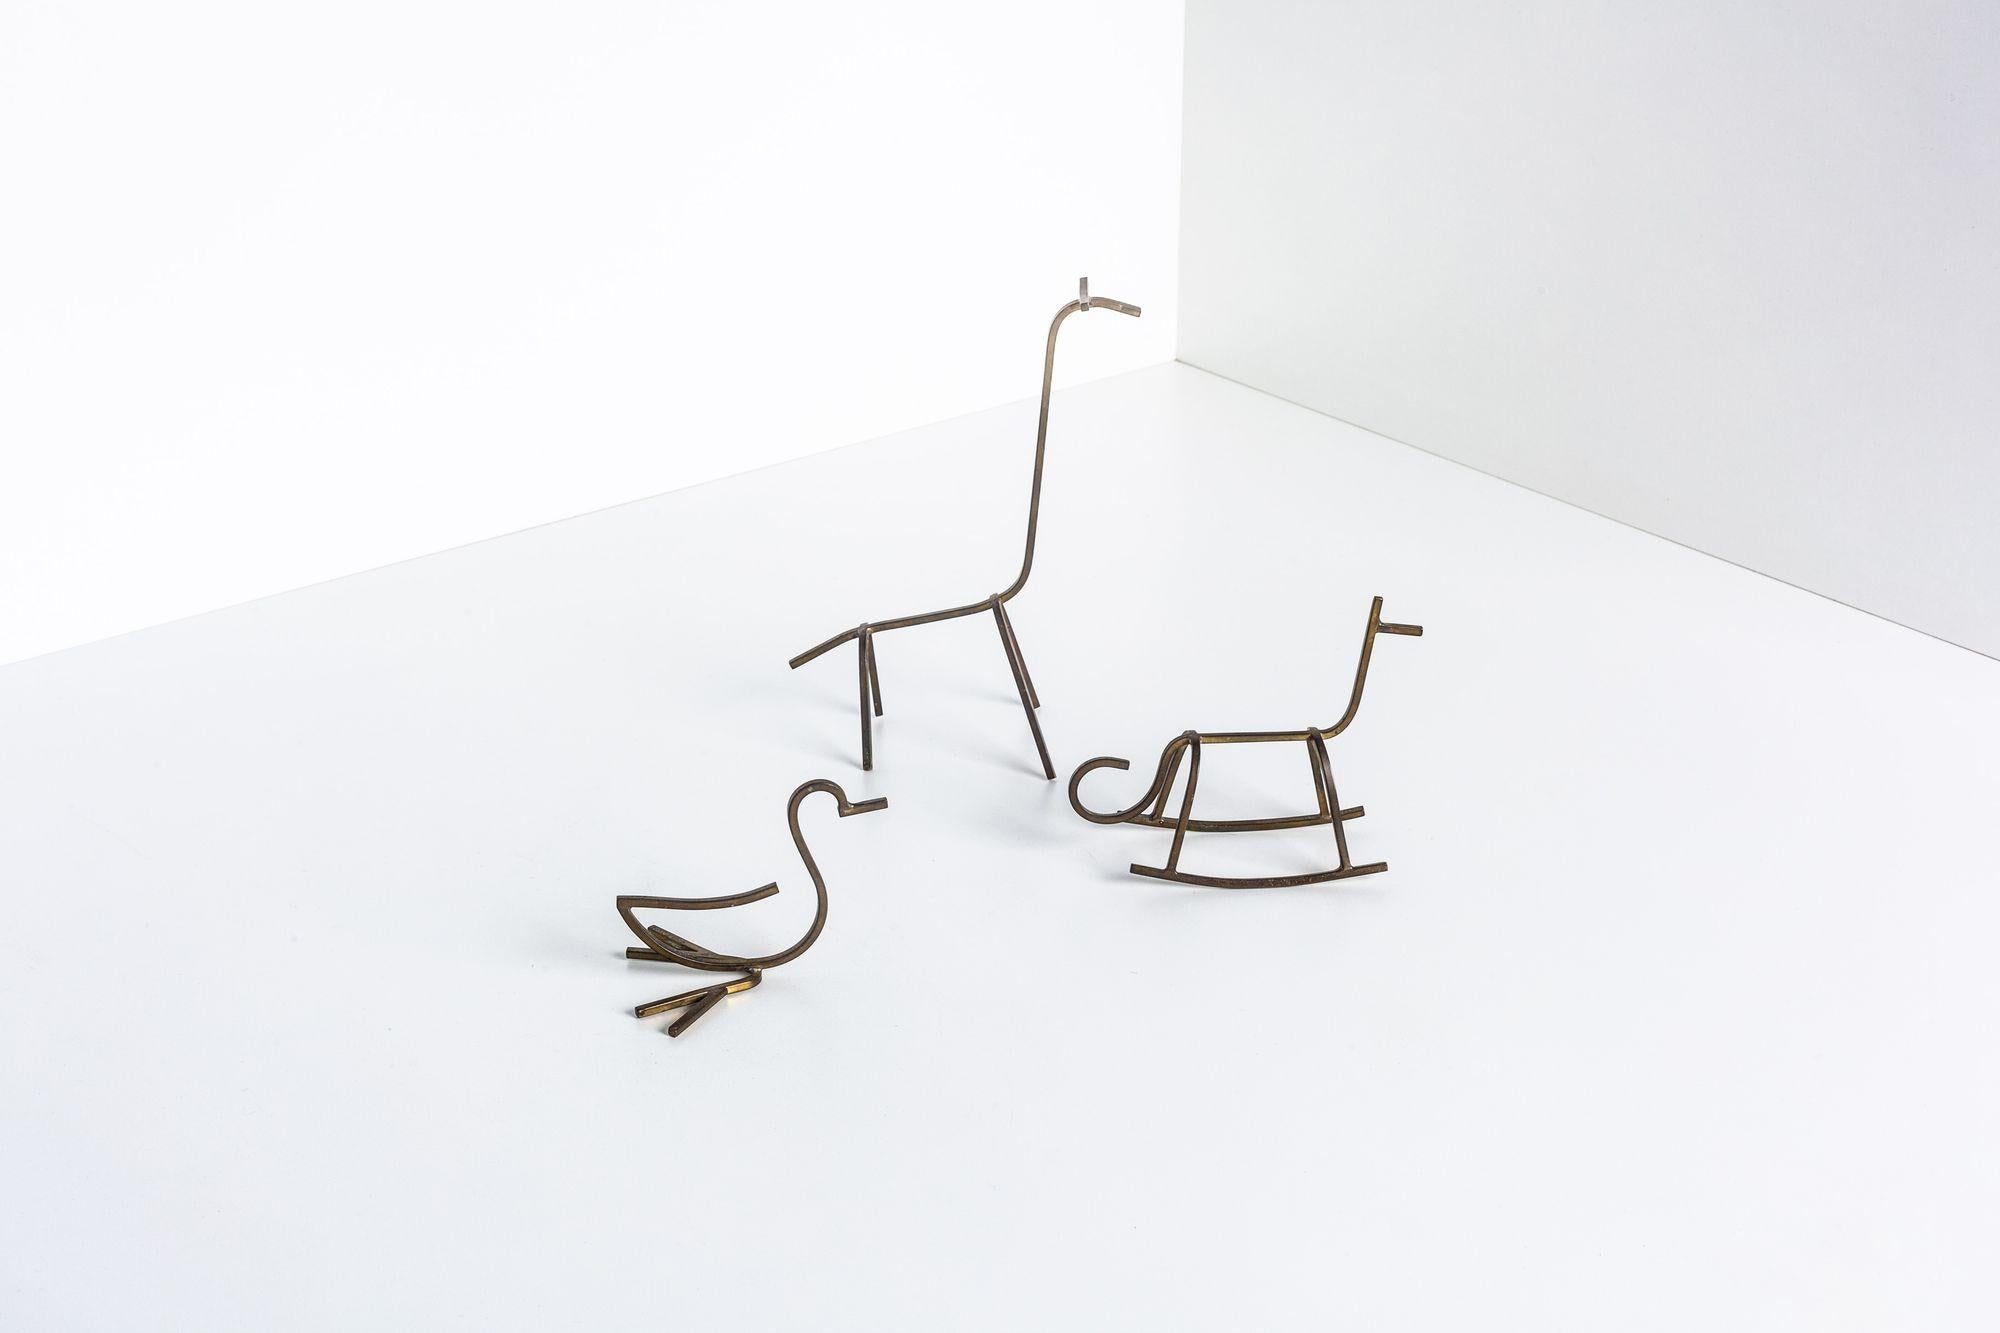 Simon Kops Satz minimalistischer Tierskulpturen aus massivem Messing;
Handgefertigte Giraffe, Ente und Pferd
Jeweils auf der Unterseite signiert, Simon Kops
Giraffe 7,50